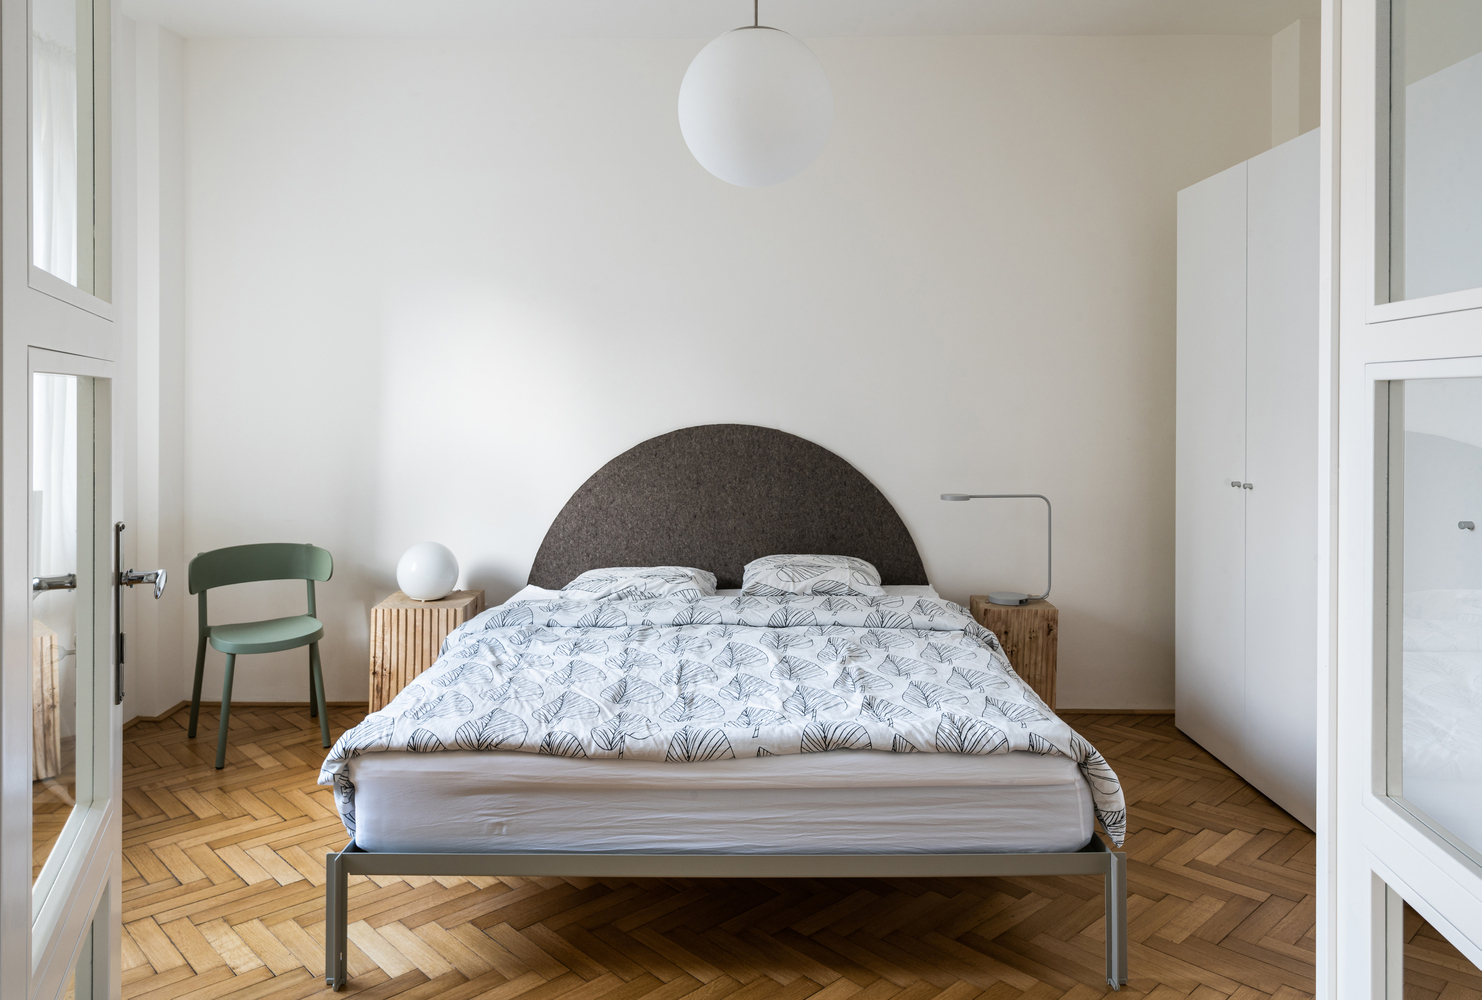 Phòng ngủ có thiết kế tối giản với tông màu trung tính nhã nhặn. Căn phòng luôn thông thoáng và tận dụng được ánh sáng tự nhiên nhờ khung cửa sổ kính lớn.